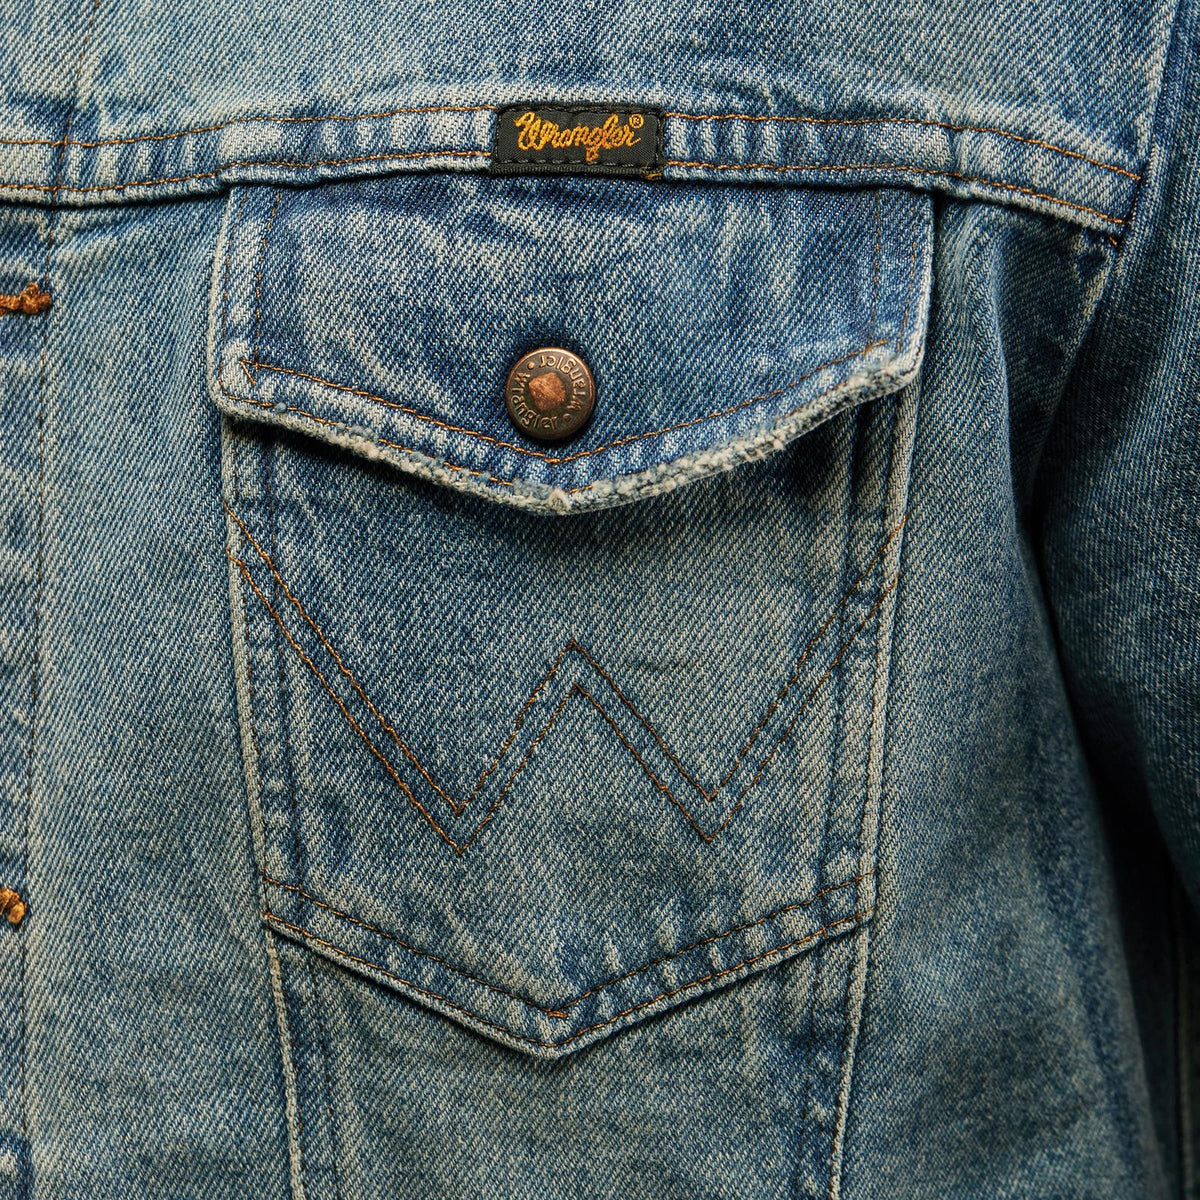 Wrangler Men's Vintage Inspired Unlined Denim Jacket in Antique Blue